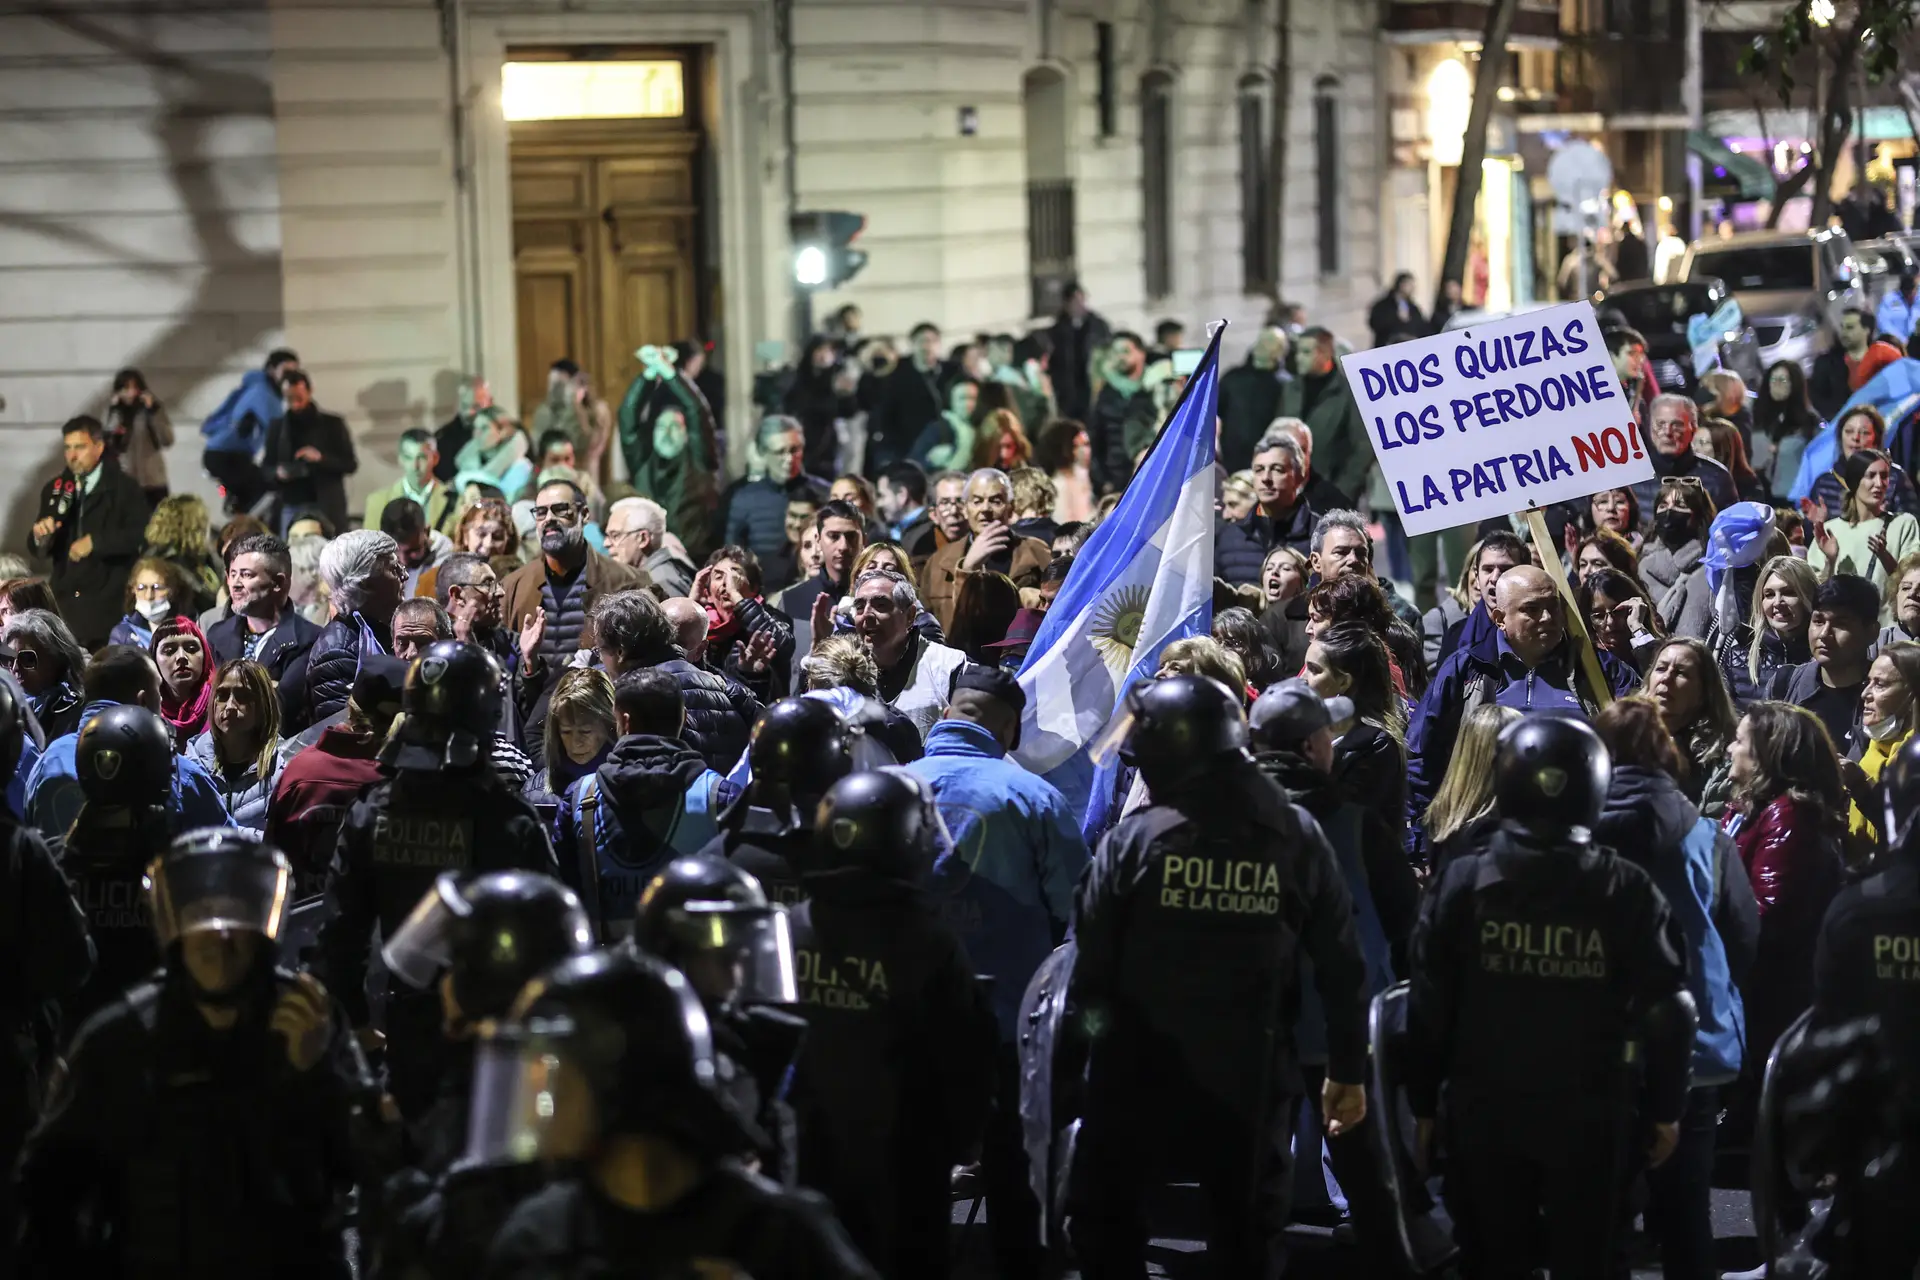 No cartaz lê-se "Talvez Deus perdoe, a pátria não", numa manifestação junto à casa da vice-Presidente argentina, depois de o Ministério Público ter pedido 12 anos de prisão para Cristina Kirchner